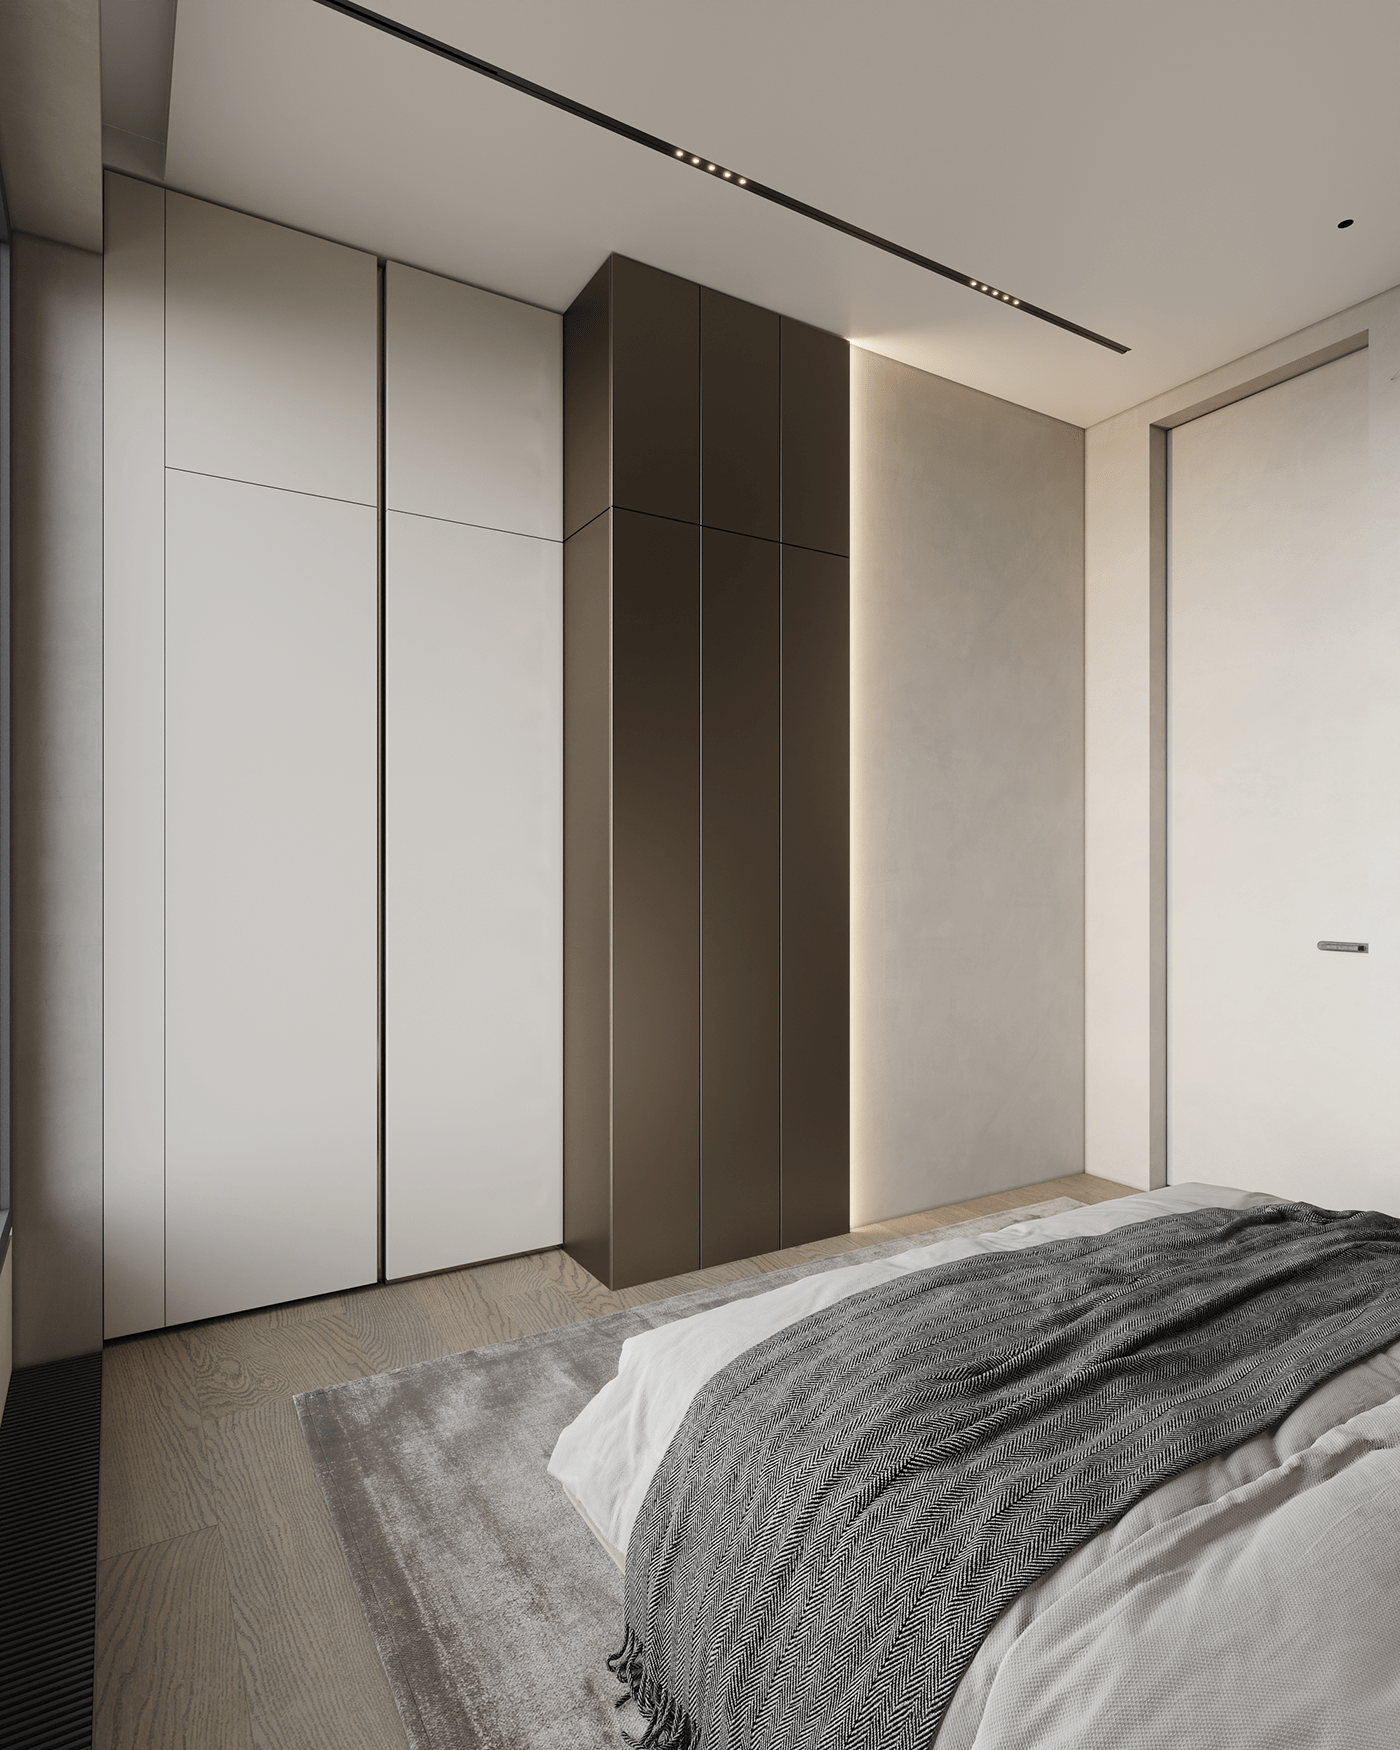 3dsmax architecture corona interior design  visualization